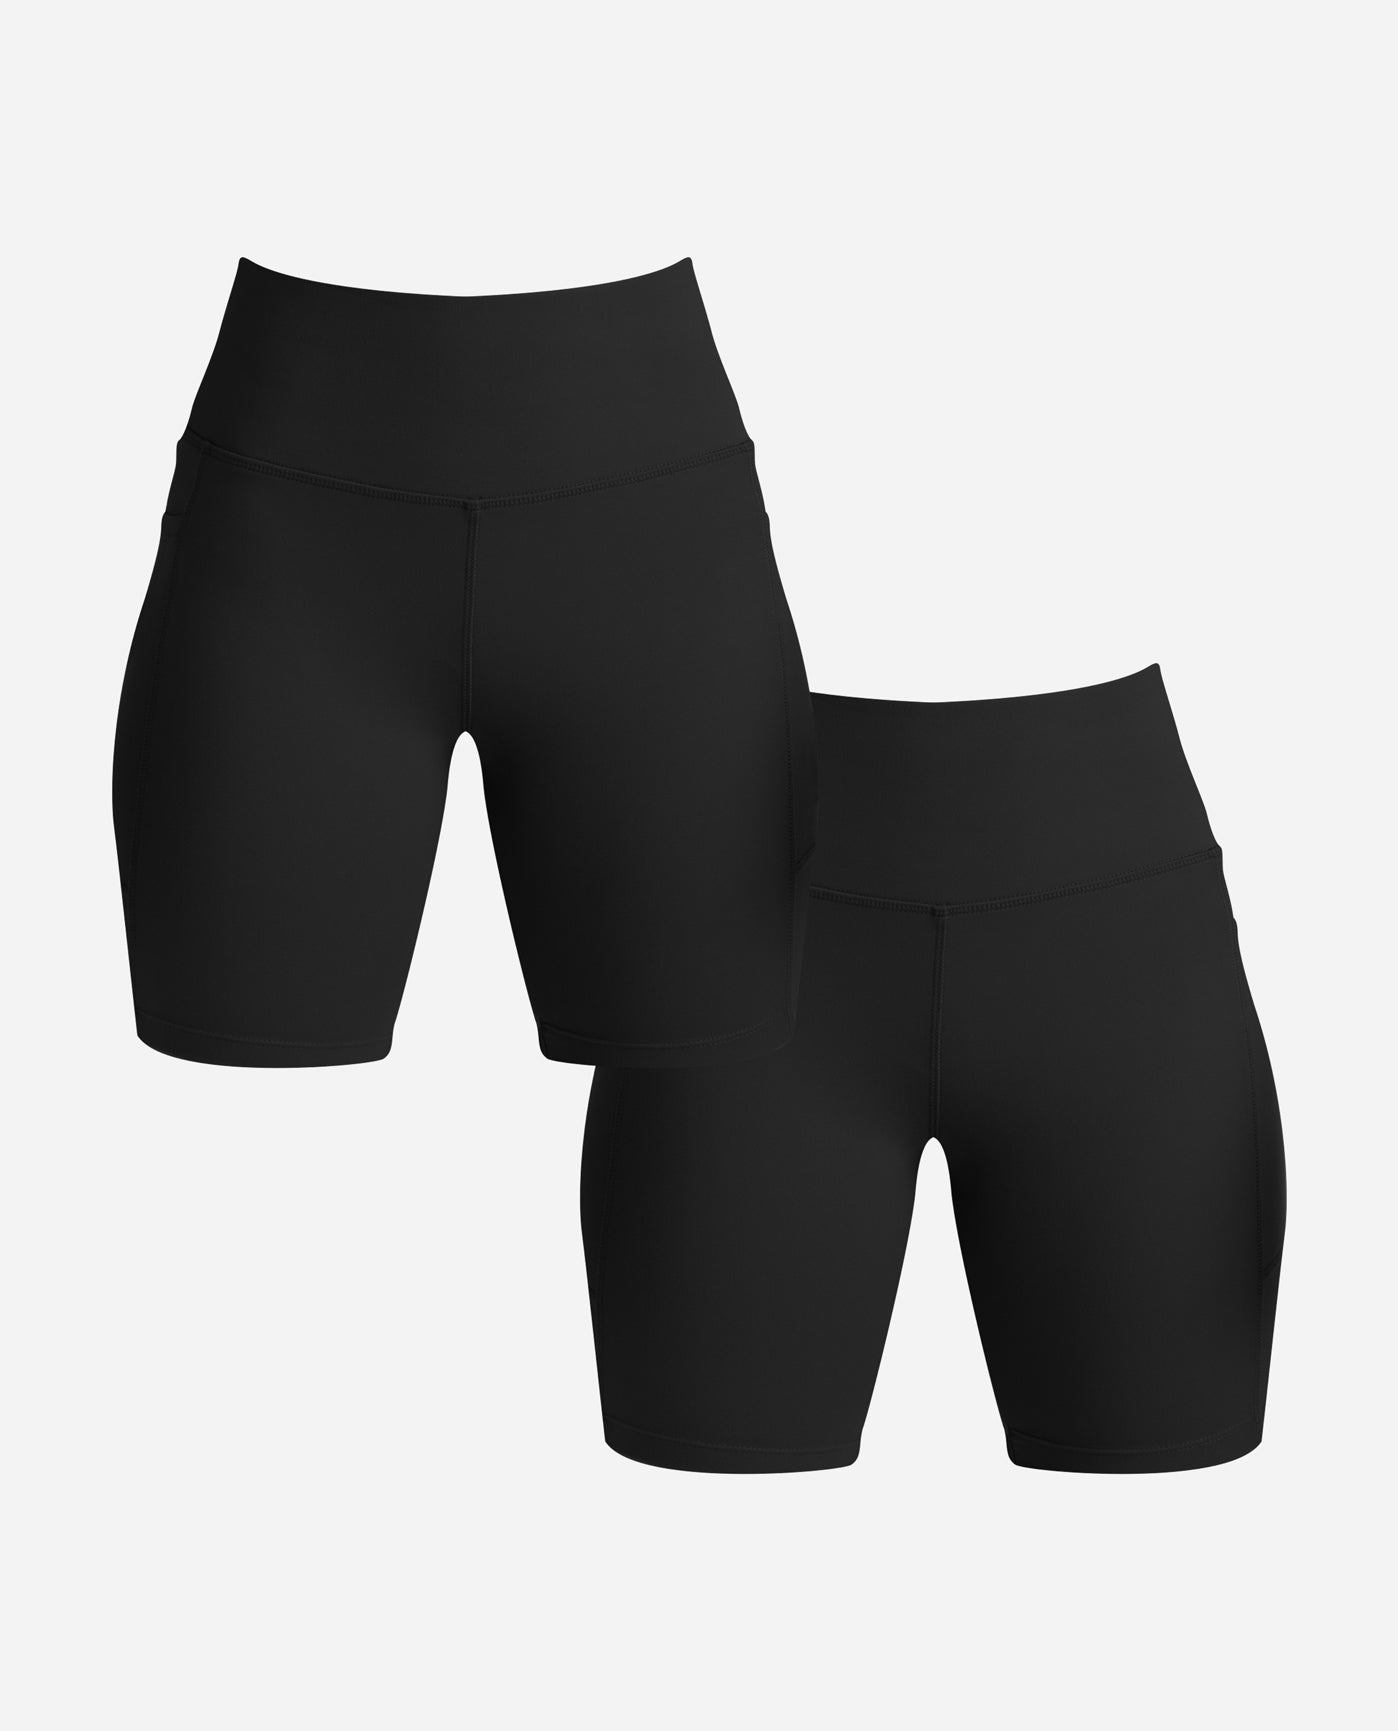 2Pack SXY Solid Wideband Waist Biker Shorts,for Women Under Dress